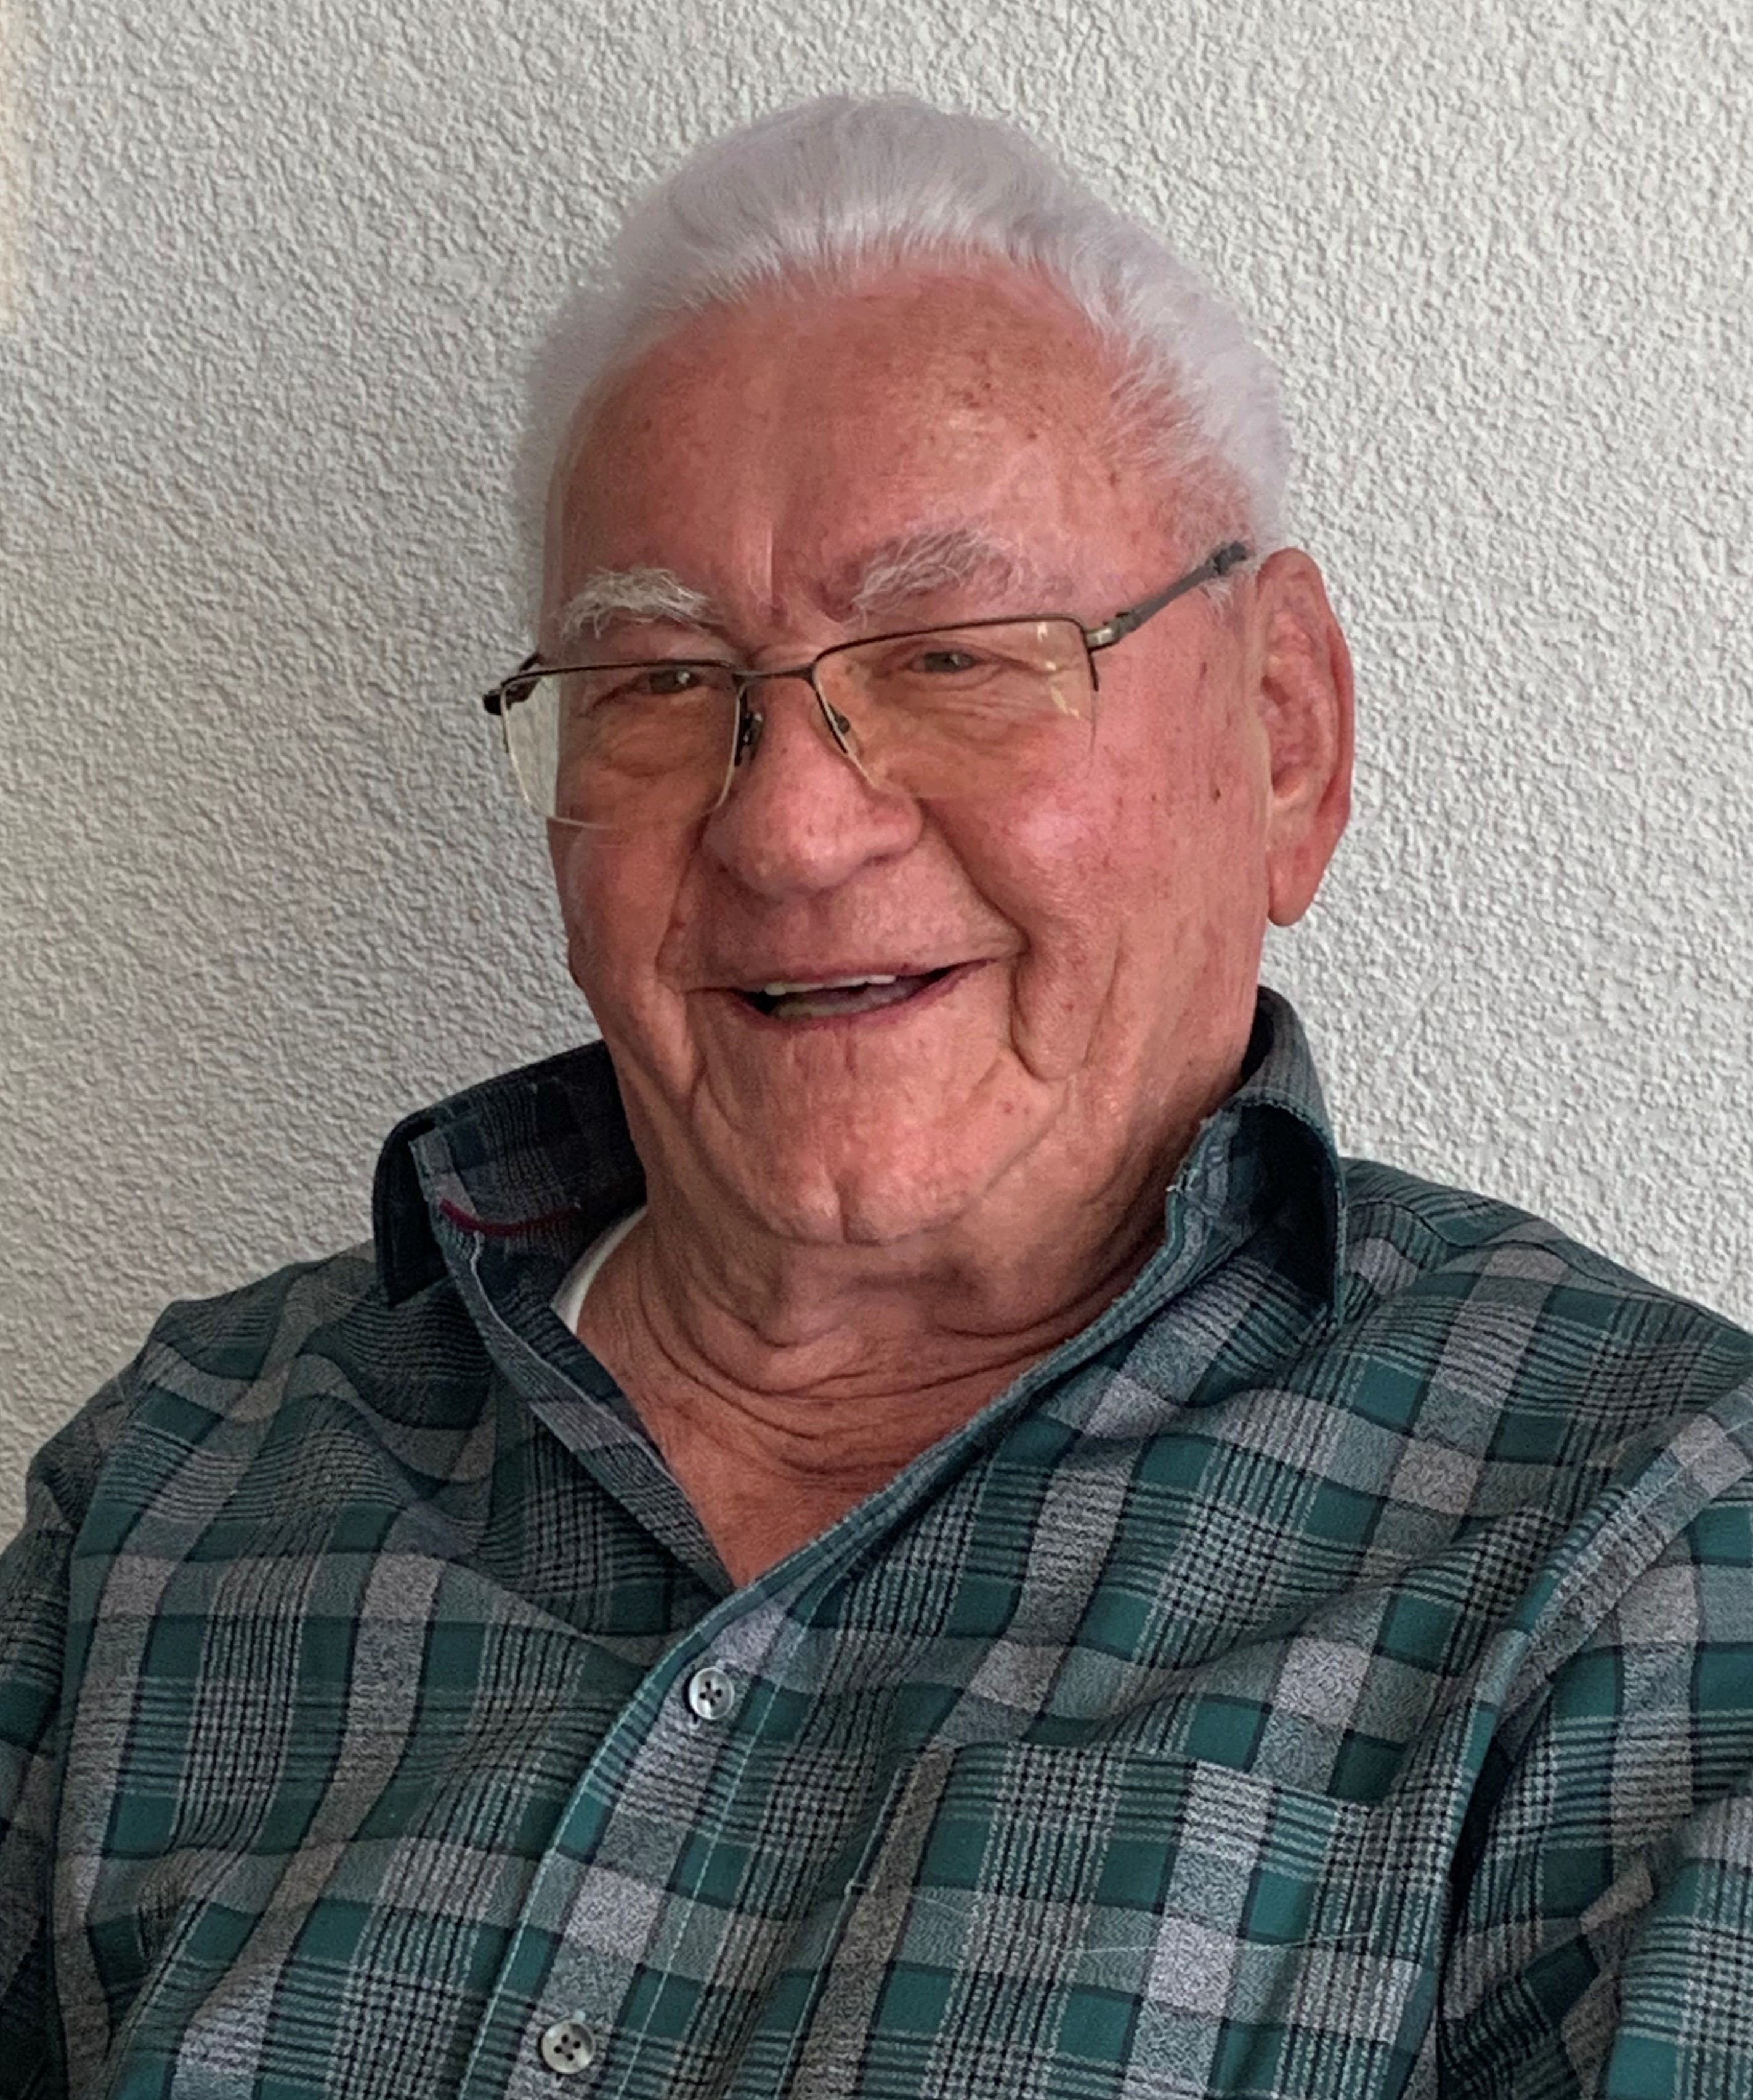 Am Montag, 29. März 2021 , durfte Herr Walter Grunder seinen 90. Geburtstag feiern.

Die Gemeindebehörden gratulieren ganz herzlich dazu!